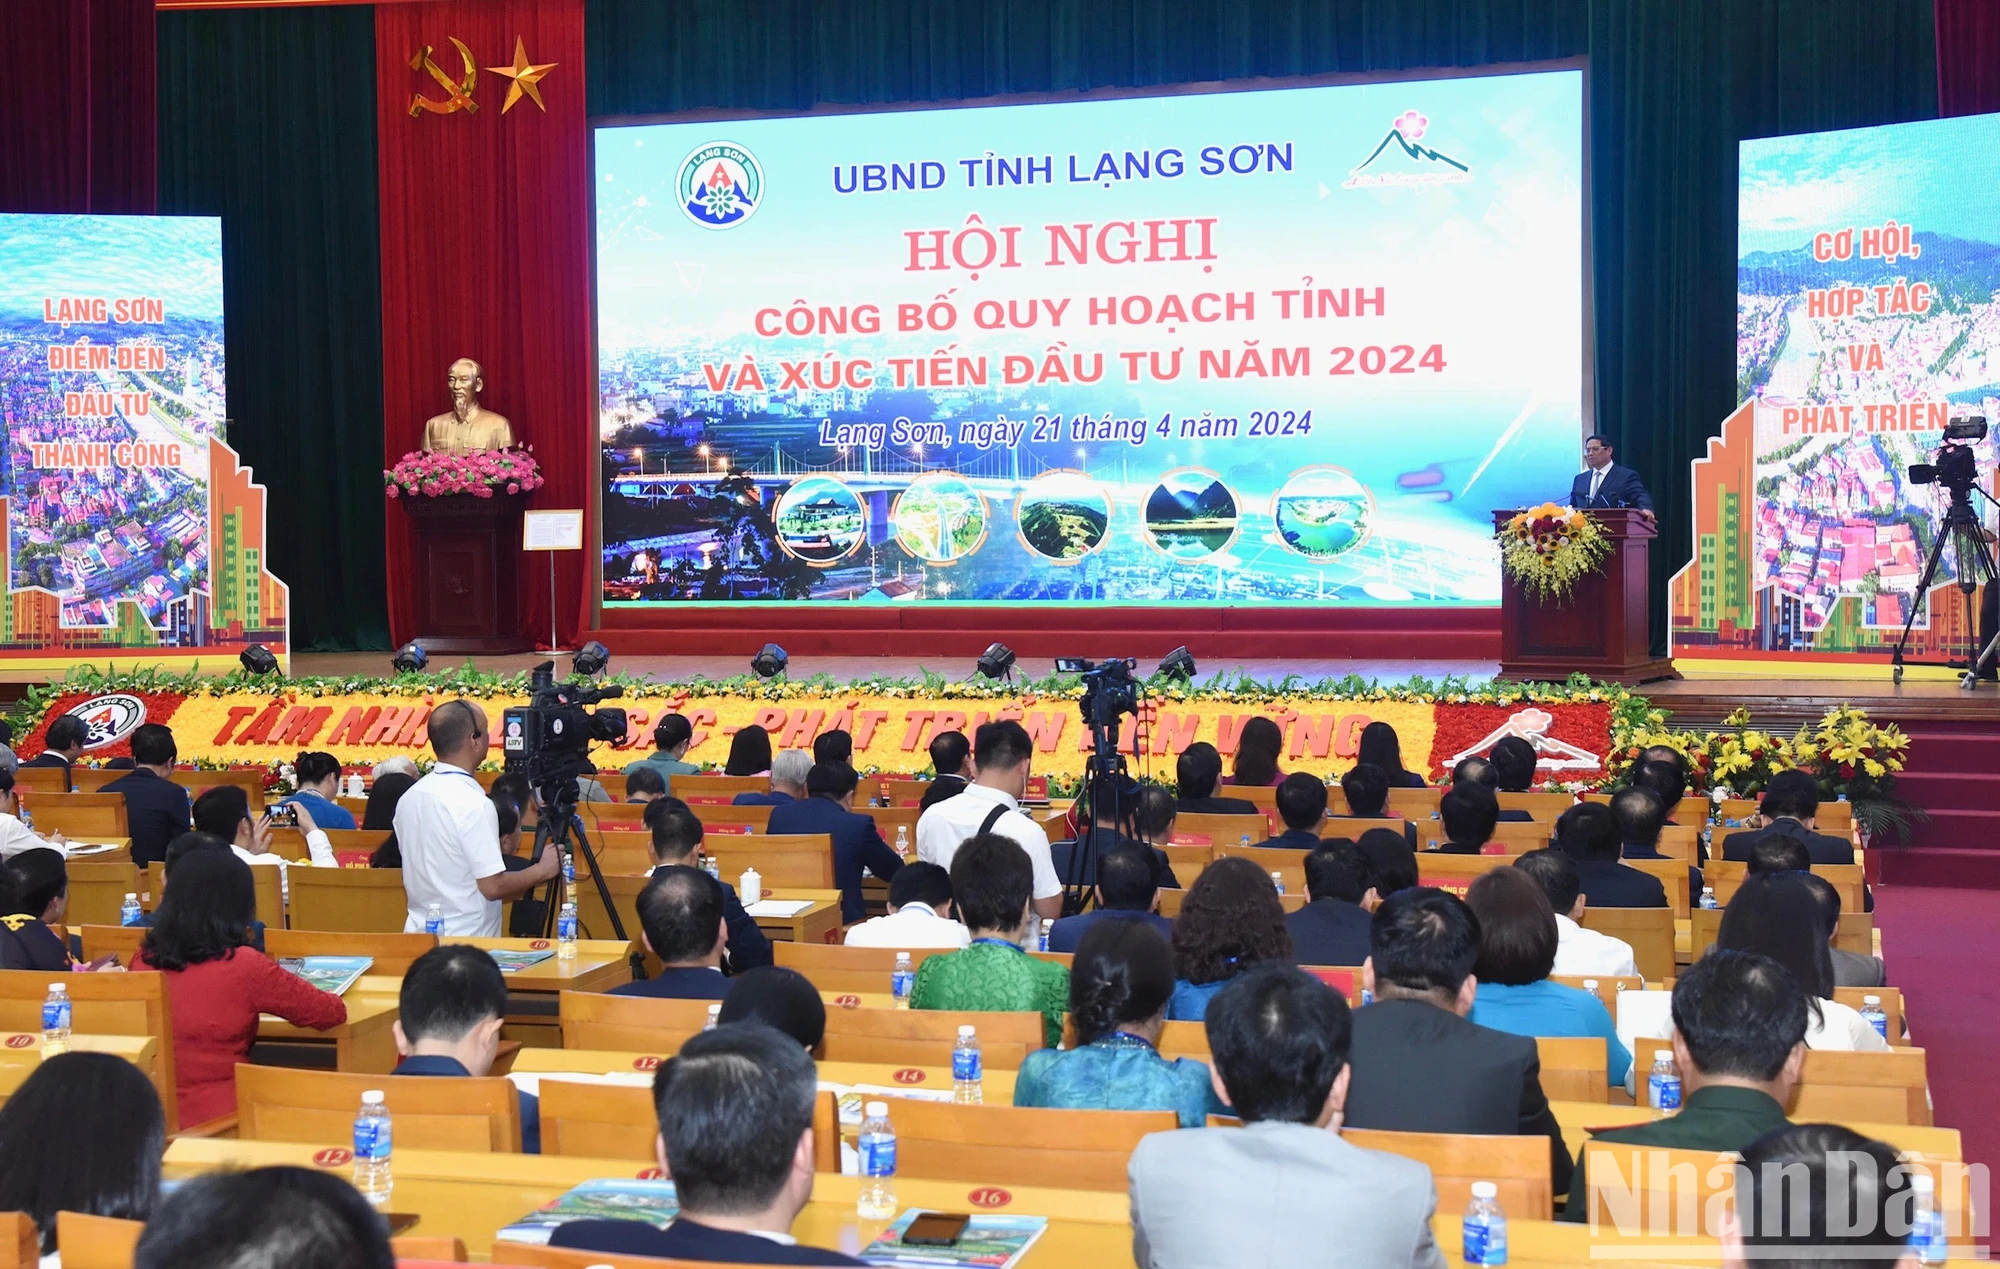 [Ảnh] Thủ tướng dự Hội nghị công bố quy hoạch tỉnh Lạng Sơn ảnh 11